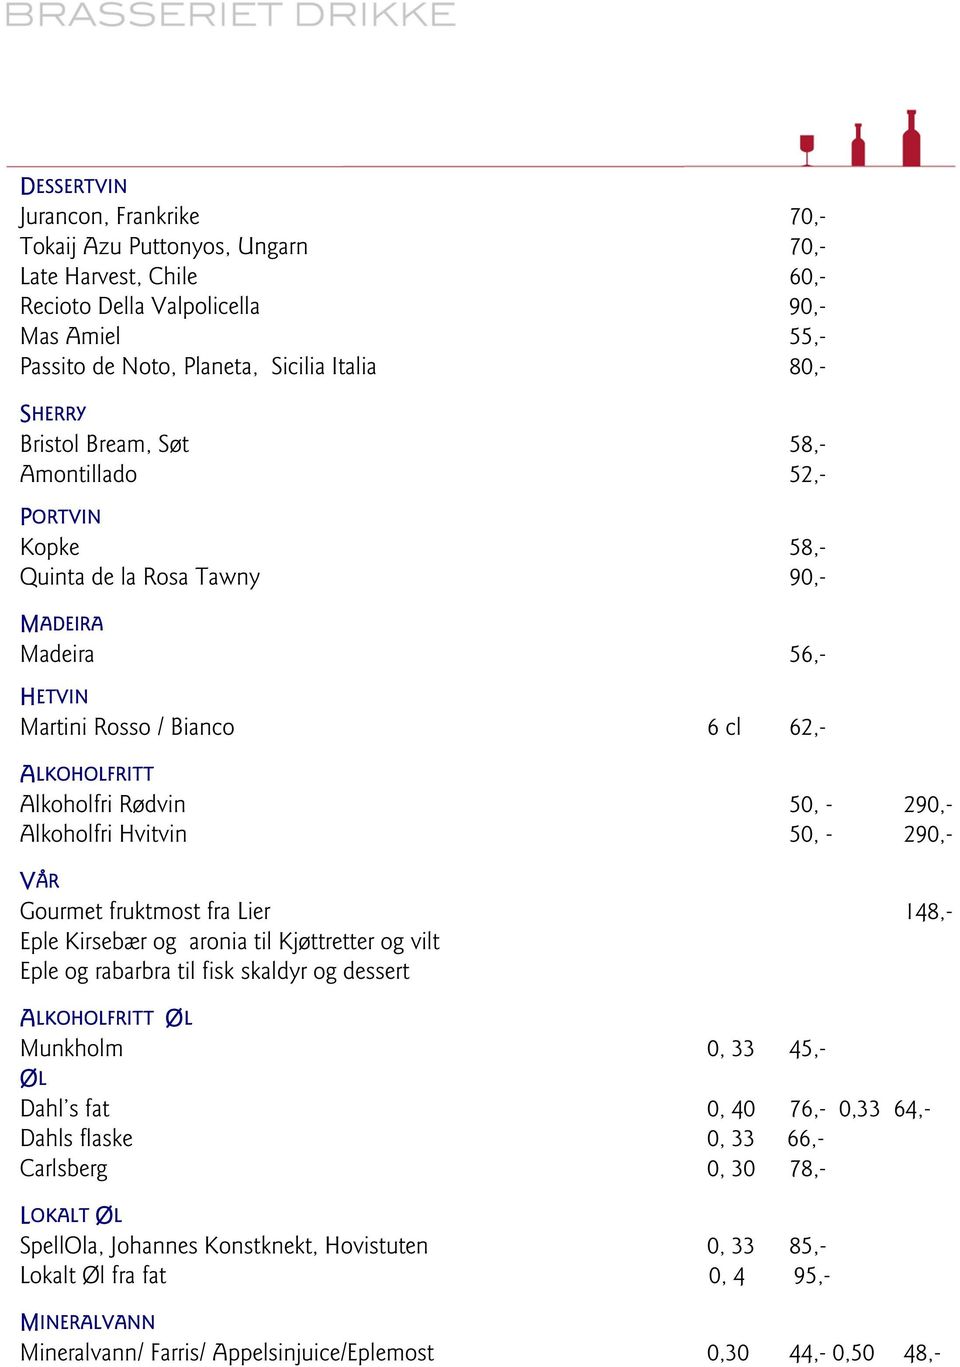 Alkoholfri Hvitvin 50, - 290,- VÅR Gourmet fruktmost fra Lier 148,- Eple Kirsebær og aronia til Kjøttretter og vilt Eple og rabarbra til fisk skaldyr og dessert ALKOHOLFRITT ØL Munkholm 0, 33 45,- ØL